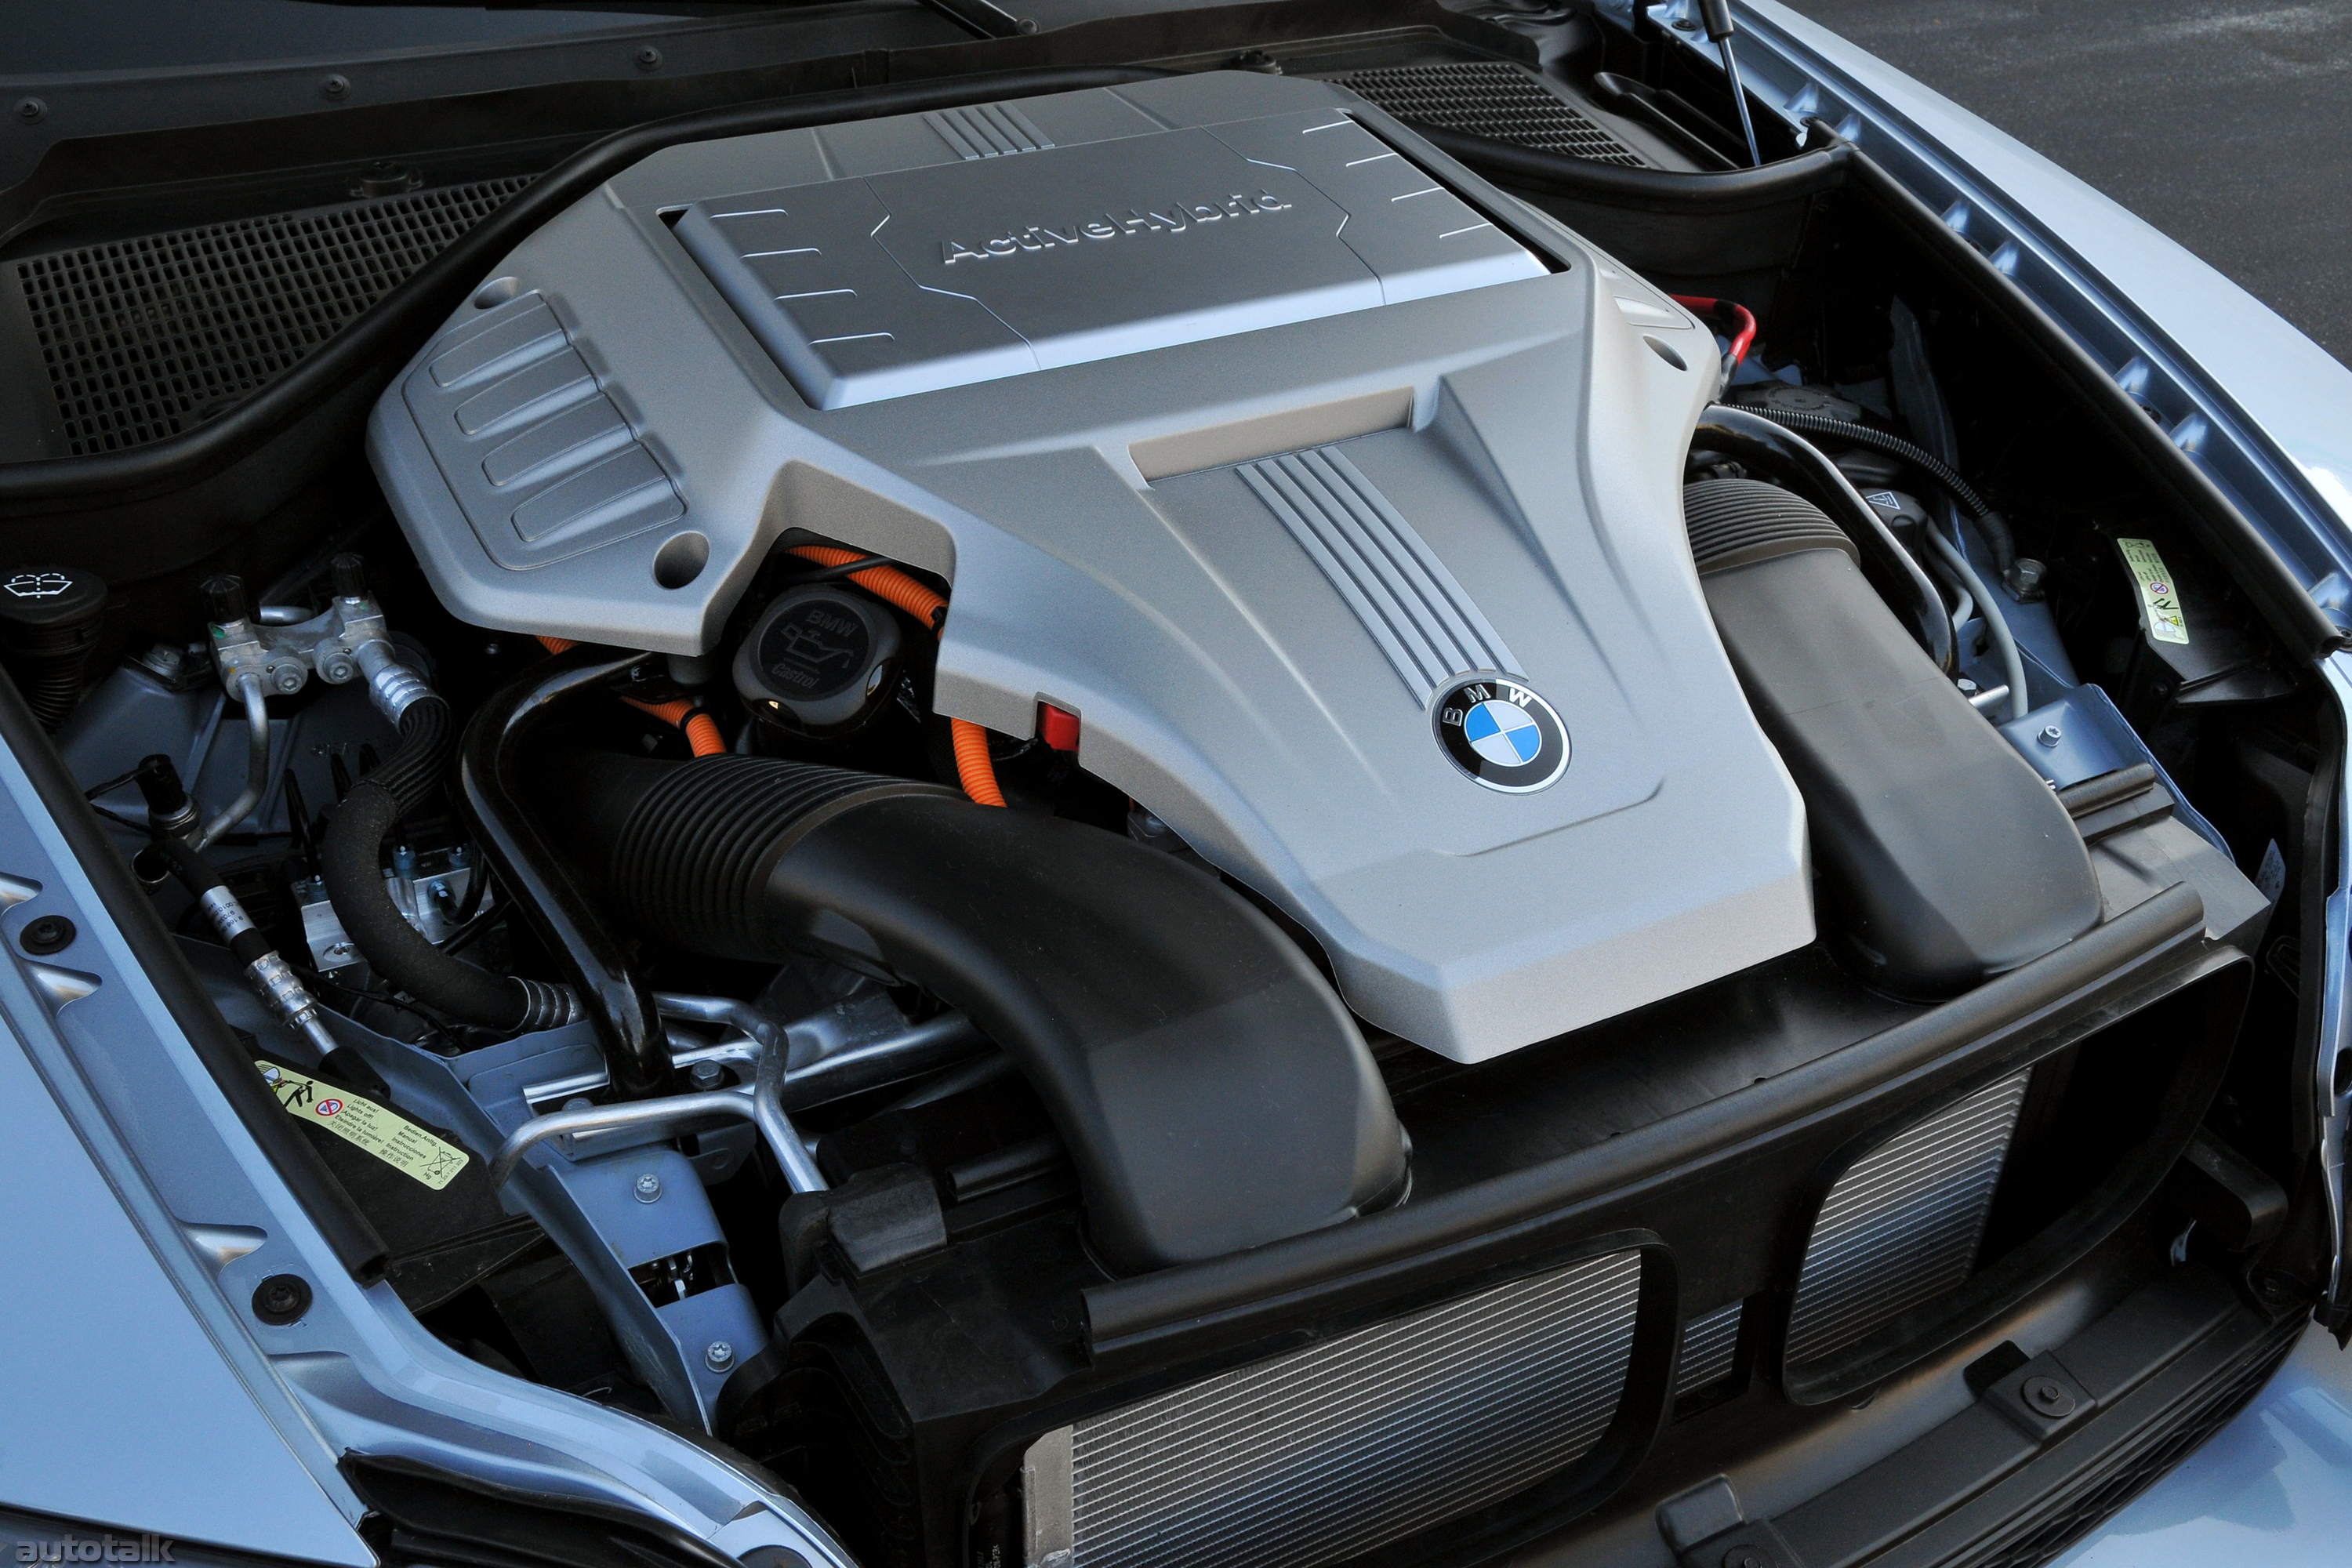 Bmw x6 двигатели. BMW x6 мотор. BMW x6 Hybrid. БМВ x6 гибрид двигатель. BMW x6 e71 под капотом.